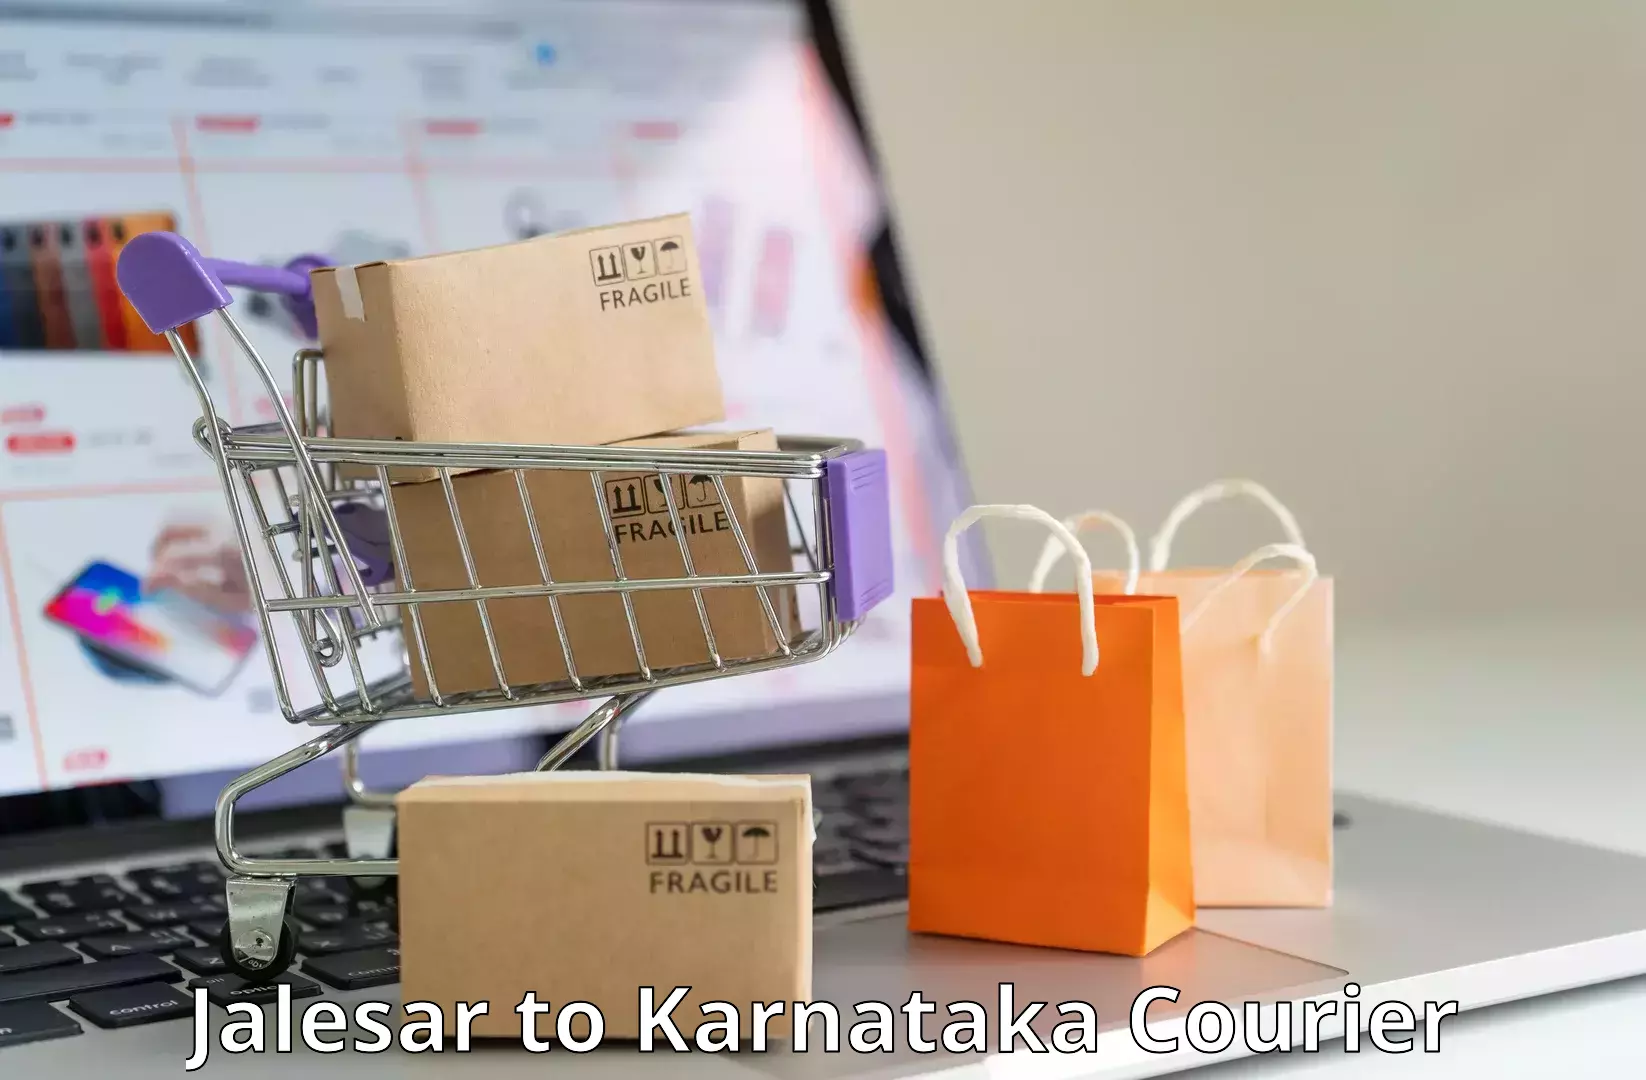 Efficient parcel delivery Jalesar to Karnataka